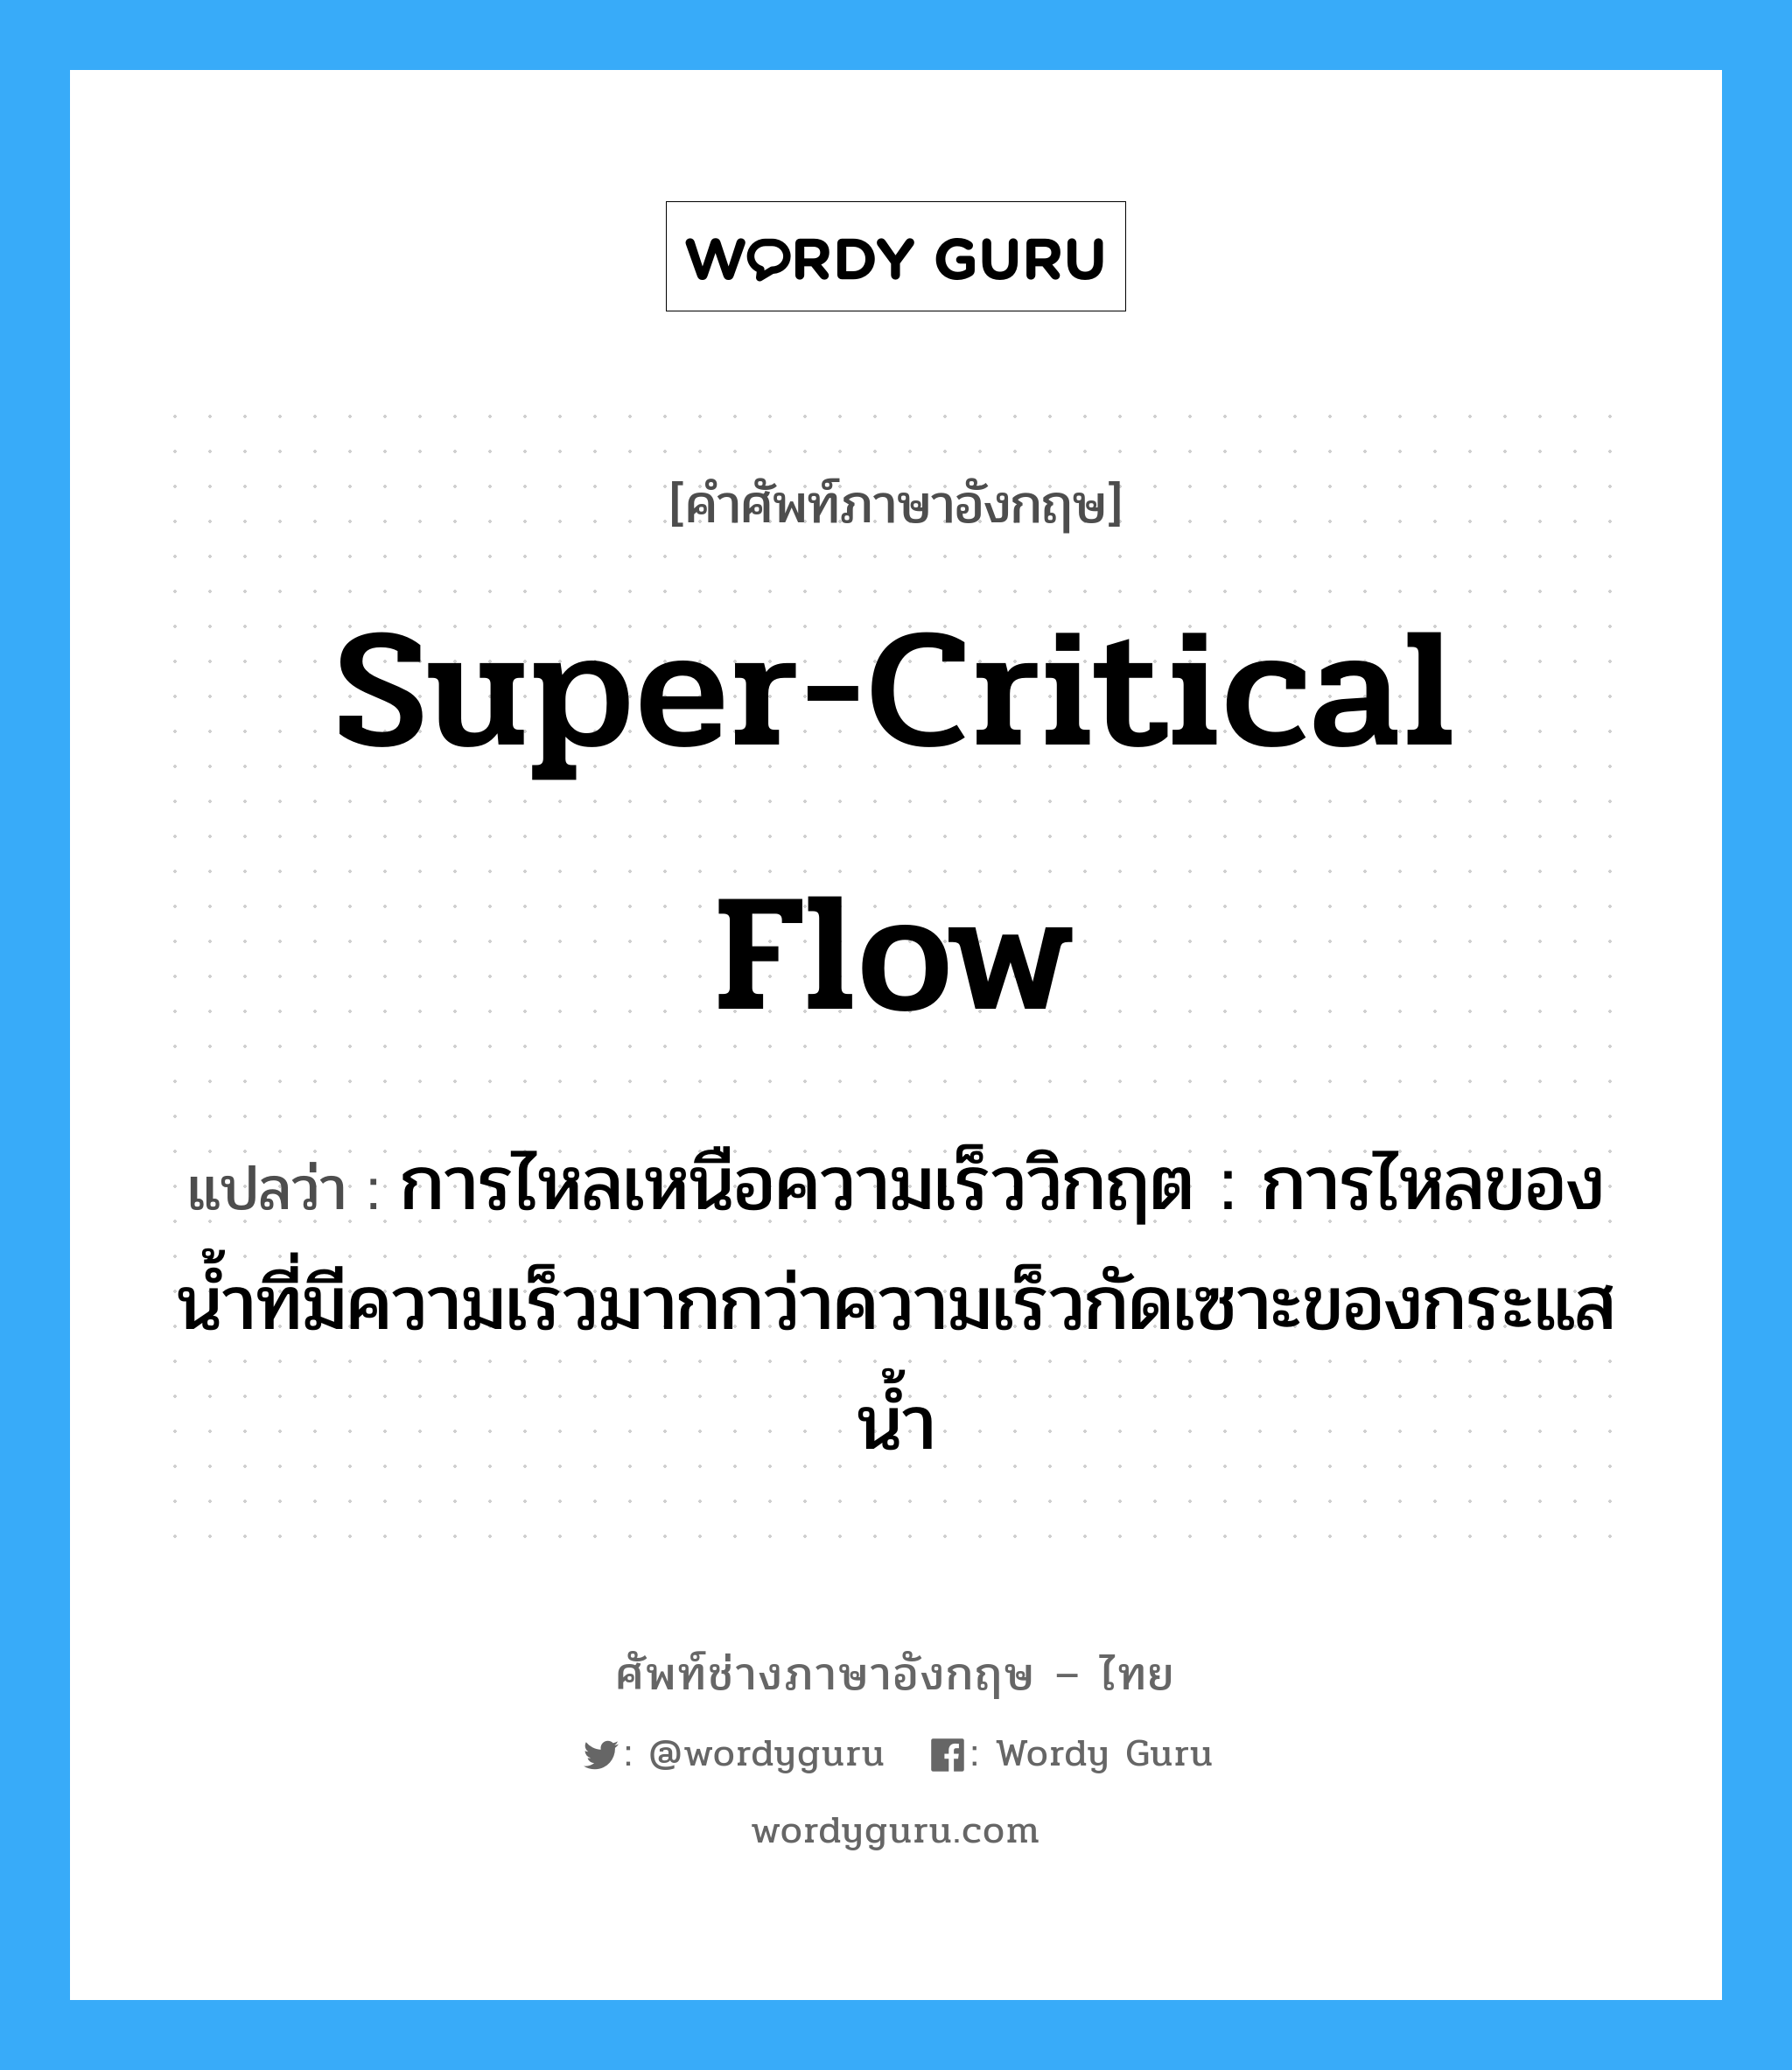 super-critical flow แปลว่า?, คำศัพท์ช่างภาษาอังกฤษ - ไทย super-critical flow คำศัพท์ภาษาอังกฤษ super-critical flow แปลว่า การไหลเหนือความเร็ววิกฤต : การไหลของน้ำที่มีความเร็วมากกว่าความเร็วกัดเซาะของกระแสน้ำ